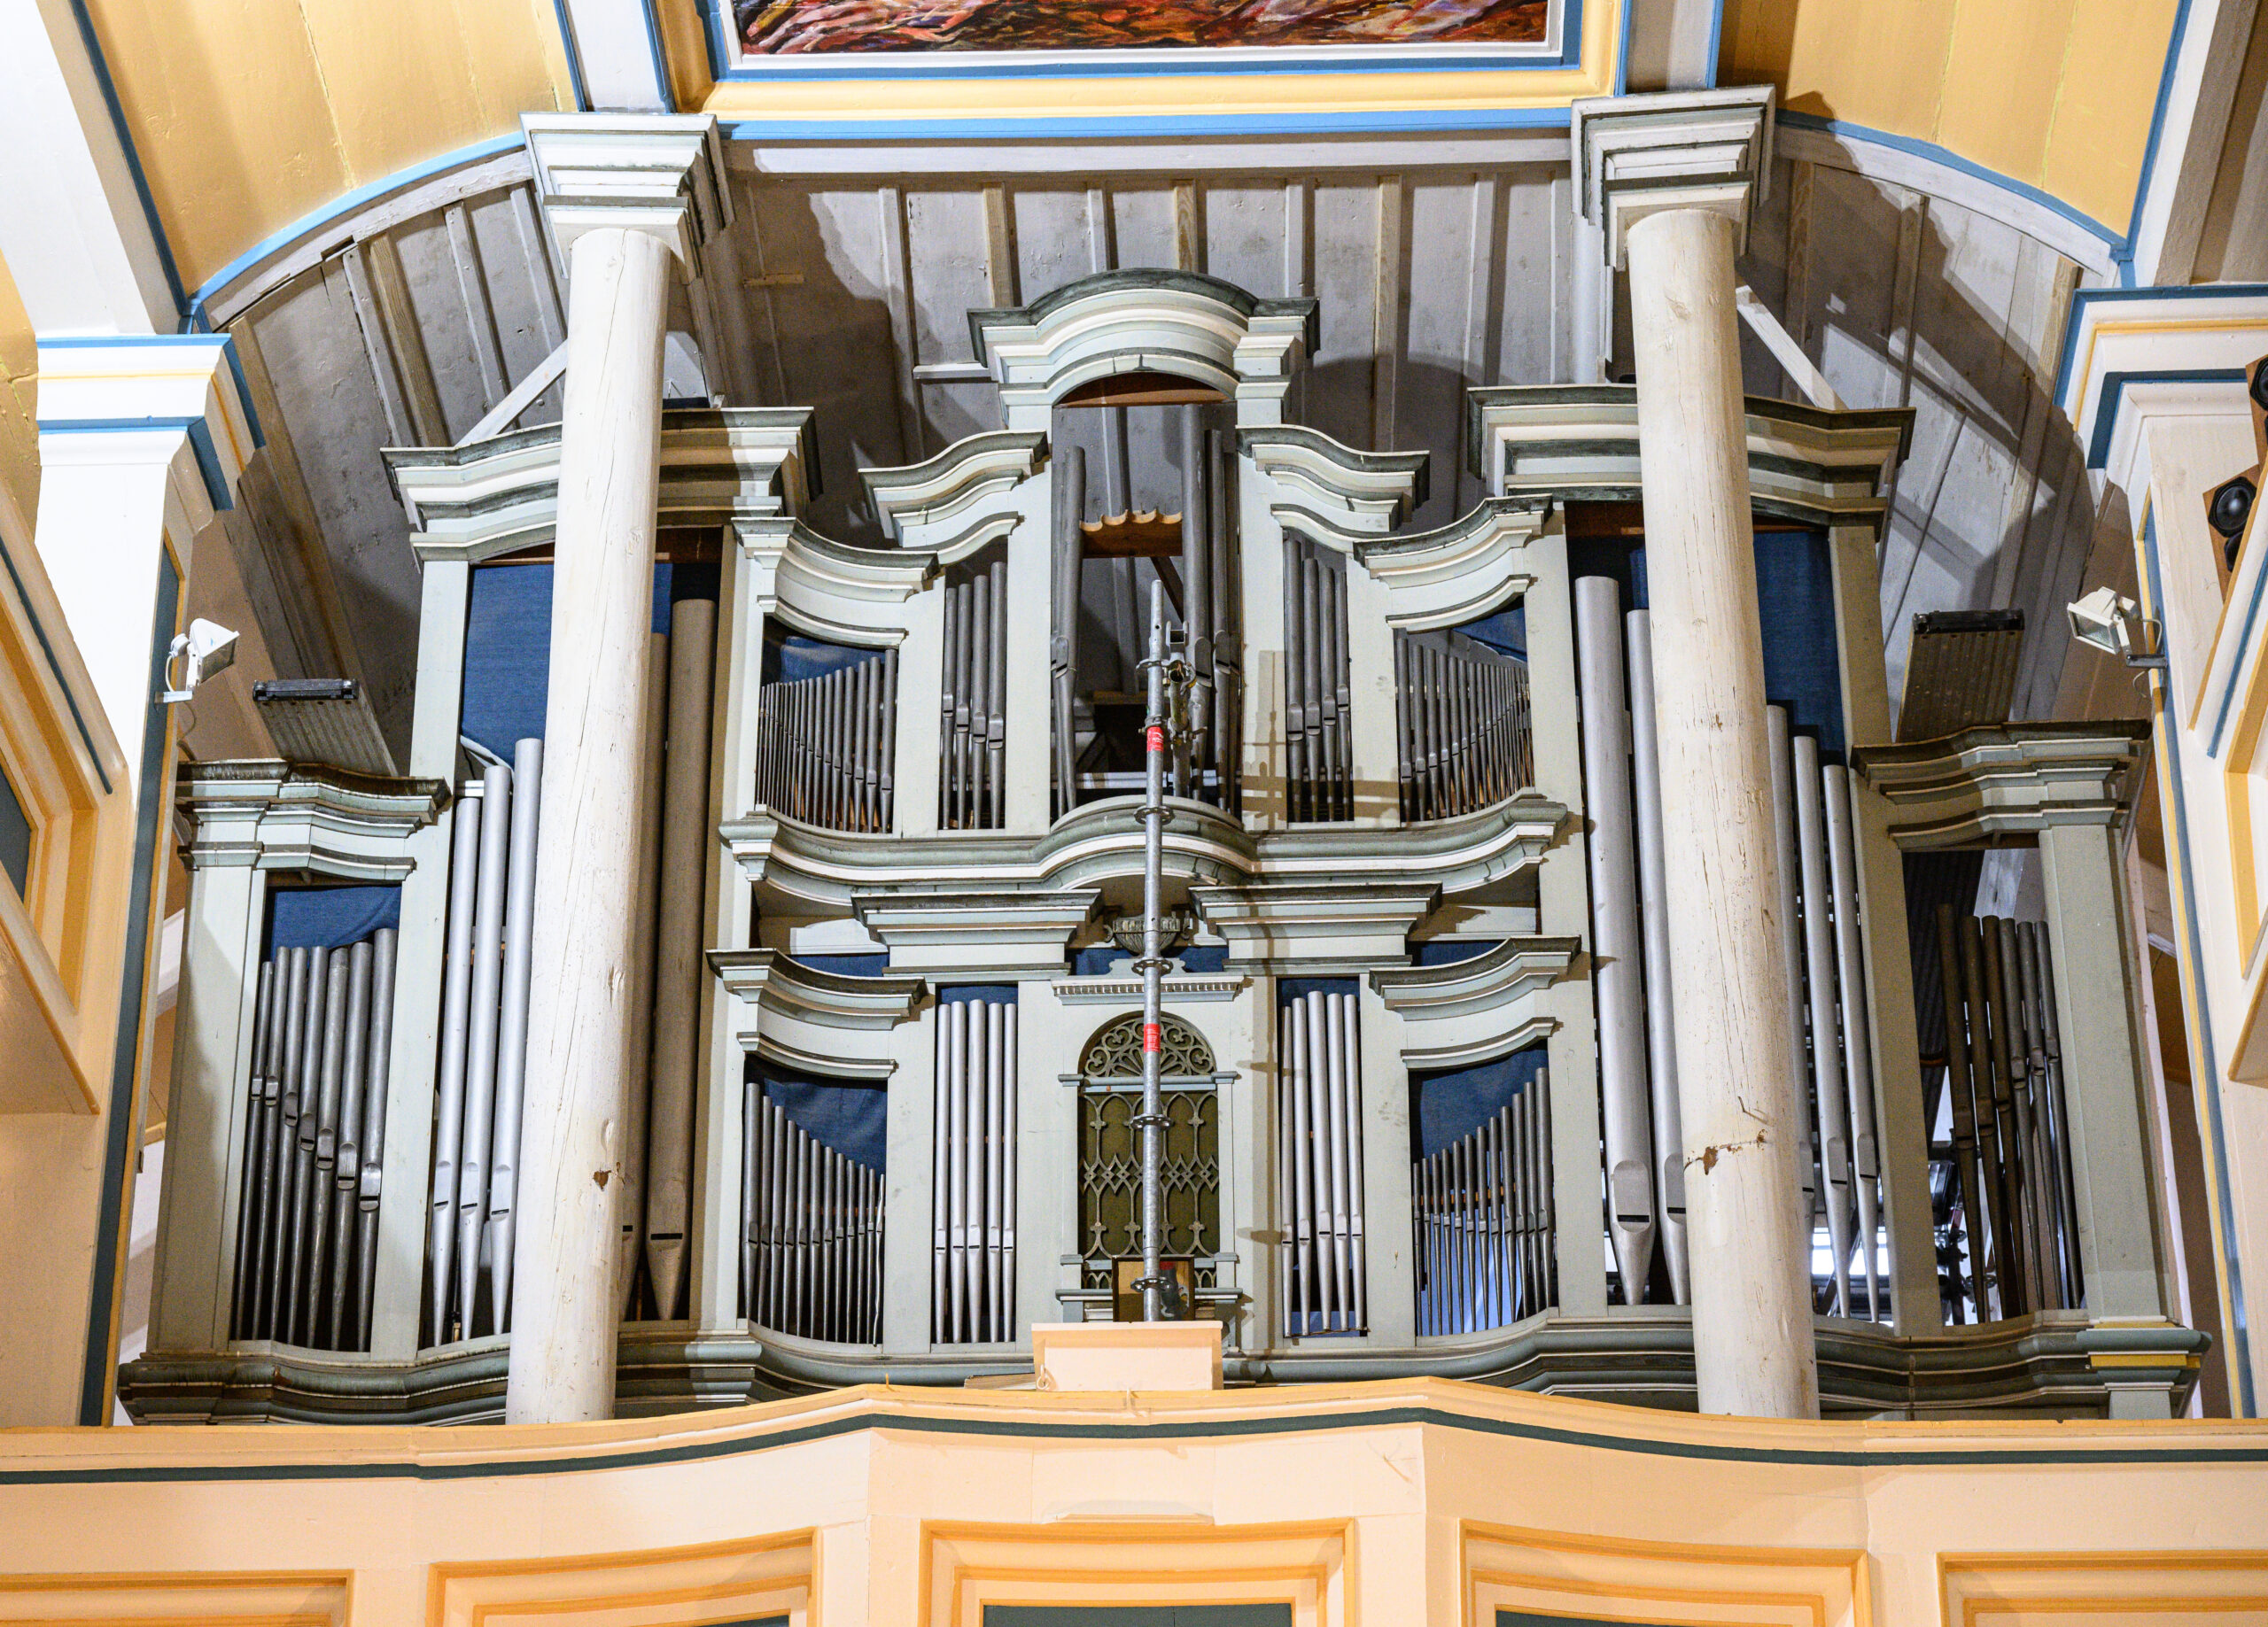 Wölfis
Beeindruckend ist der Blick in das Kirchenschiff der St.-Crucis-Kirche im Ohrdrufer Ortsteil Wölfis, doch es ist noch viel zu tun, im und am sakralen Gebäude im Ortskern vieles so wiederherzustellen, wie es einst mal war. Der Zahn der Zeit nagte reichlich am dem Bauwerk von 1736. 
Noch immer engagiert sich der Gemeindekirchenrat für die Restaurierung der imposanten Ratzmann-Orgel mit ihren 28 zum Teil seltenen Registern, stellt immer wieder Förderanträge und sammelt Spenden. Die Orgel ist ausgebaut und große Teile ihres Inneren liegen in den Werkstätten der Orgelbau Waltershausen GmbH. Dort werden Pfeifen vorintoniert. Die endgültige Intonierung erfolgt nach dem Einbau, unter anderem da sich die Pfeifen dann gegenseitig im Klang beeinflussen können. So erläutert Orgelbaumeister und zugleich einer der beiden Geschäftsführer Joachim Stade den Prozess. 

Die Orgelsanierung inklusive Umfeldarbeiten wird am Ende 222.000 Euro gekostet haben, wird geschätzt. Sie umfasst den auch Umtausch der Pfeifen-Attrappen gegen echte Zinnpfeifen. 
1917 war das Zinn für Kriegszwecke benötigt worden. Umso größer die Freude über einen Besuch des Sparkassen-Chefs für den Kreis Gotha, Jörg Krieglstein und Abteilungsdirektorin Claudia Hemmling. Krieglstein ist zugleich Vorsitzender des Stiftungsvorstandes der Regionalstiftung der Kreissparkasse Gotha. Da auch mithilfe der Vergabe von Pfeifen-Patenschaften Geld einkommen soll, die Ratzmann-Orgel künftig wieder in ganzer Fülle erklingen lassen zu können, übernimmt die Stiftung für 5000 Euro eine dieser Patenschaften. Diese Patenschaften sind zum Teil auch zu deutlich geringeren Spenden zu haben. Wer spendet, kann seinen Namen auf einer der neuen Pfeifen eingravieren lassen. Damit dies auch sichtbar ist, gibt ausserdem den Eintrag auf einer Tafel. Für die Unterstützung in Wölfis haben sich auch Landrat Onno Eckert und Ohrdrufs Bürgermeister Stefan Schambach (beide SPD)  eingesetzt, berichtete Krieglstein. Eckert ist Vorsitzender, Schambach Mitglied des Stiftungsrates. Darüber hinaus soll, diesmal direkt durch die Sparkasse, ein Benefizkonzert mit dem bekannten Gothaer Kirchenmusikdirektor und Organisten Jens Gollhardt unterstützt werden. Erster Orgelpate ist Hans Umbreit, einer der dienstältesten Organisten. Er spielt seit 75 Jahren. Für 1000 Euro übernahm er eine Pfeifen-Patenschaft. 

Viele weitere Reparaturarbeiten stehen für die Kirche an. Die Orgelsanierung betrifft auch deren Umfeld und den Orgel-Prospekt. Nach dem Ausbau der Orgel zeigten sich bröckelnder und mit Hohlräumen durchzogener Putz. Am 19. Februar 2022 implodierte durch Sturm das erste der oberen Turmfenster.  Das Zwillingsfenster daneben war seit den achtziger Jahren abgedeckt, um zu vermeiden, dass die Lederumhüllungen der Blasebälge und der Züge durch die Sonne altern. Hinter der Abdeckung zeigte sich dann ein Schaden an diesem Fenster. Es wäre verantwortungslos gewesen, dies nicht gleich mit zu erneuern, gibt Ursula Rolapp vom Gemeindekirchenrat zu bedenken. Deckleisten über der Orgel wurden mit bereits in der Kirche gelagertem historischem Holz erneuert, damit künftig kein Dreck auf die Orgel rieselt. 

Auch sind Stuckteile an der Decke der ersten Empore zu erneuern. Daran arbeitet zur Zeit eine die Restauratorin Annemarie Grimm aus Arnstadt. In einer Erfurter Werkstatt wird gerade der einzigartige Taufengel der Kirche durch Heike Glaß restauriert. 

St. Crucis hat Erkerfenster. Die Erker wurden 1983 entfernt, um das Dach einfacher abzudichten. Die Kirche sei daraufhin innen sehr dunkel gewesen, erinnert sich Gunar Rolapp, ein Gemeindemitglied, das auch selbst viele Arbeiten in der Kirche übernimmt. In den neunziger Jahren wurden die Erker wieder neu gebaut, um den ursprünglichen Zustand wieder herzustellen. Doch inzwischen haben zwei davon Schäden, wie sich beim ersten neuen Anstrich seit den neunziger Jahren zeigte.

In die Höhe muss auch noch ein inzwischen neu fertiggestelltes zweites Zifferblatt der Turmuhr. Das alte Zifferblatt war ebenfalls durch den Sturm beschädigt. 

So kommen in jedem Bauabschnitt - allein für die Orgel sind es vier - unerwartete Kosten hinzu, berichtet Ursula Rolapp. Deshalb sammelt der Gemeindekirchenrat weiterhin Spenden. Wer helfen möchte, kann unter dem Verwendungszweck „Ratzmann-Orgel Wölfis“ an die Evangelische Kirchgemeinde Wölfis auf IBAN DE 28 8206 4038 0000 2906 10  (VR Bank Westthüringen) spenden. Wer Spendenquittung möchte, sollte bitte zusätzlich zum Verwendungszweck Name und Wohnanschrift vermerken. 

Unter dem Verwendungszweck „Engel“ ist unter der selben Bankverbindung auch eine Unterstützung der Restaurierung des Taufengels der Kirche möglich. Wer Pate einer Orgelpfeife werden möchte, gibt als Verwendungszweck (Kennwort) „Pfeifenpatenschaft“ an. Die Beträge in Euro richten sich danach, auf welcher Pfeife die Inschrift mit dem Namen des Spenders eingraviert und damit für die Nachwelt erhalten bleiben soll. 